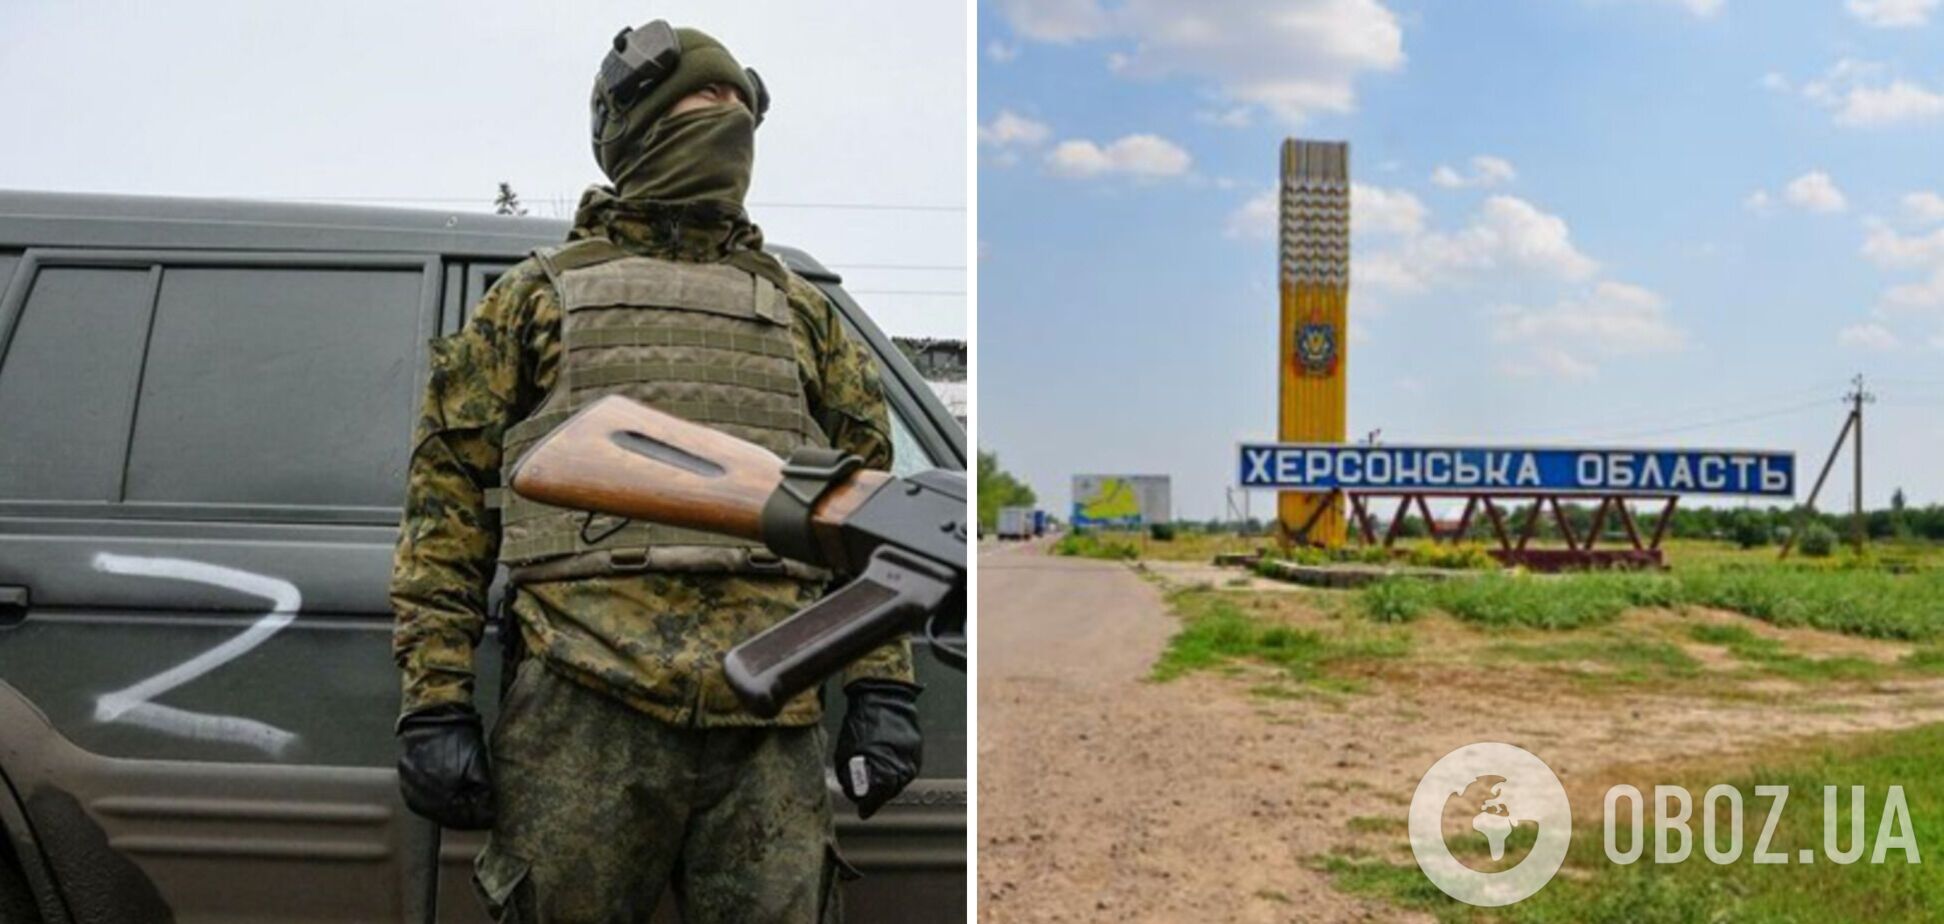 Российские оккупанты могут устроить обстрелы мирного населения в Херсонской области: Генштаб предупредил об угрозе